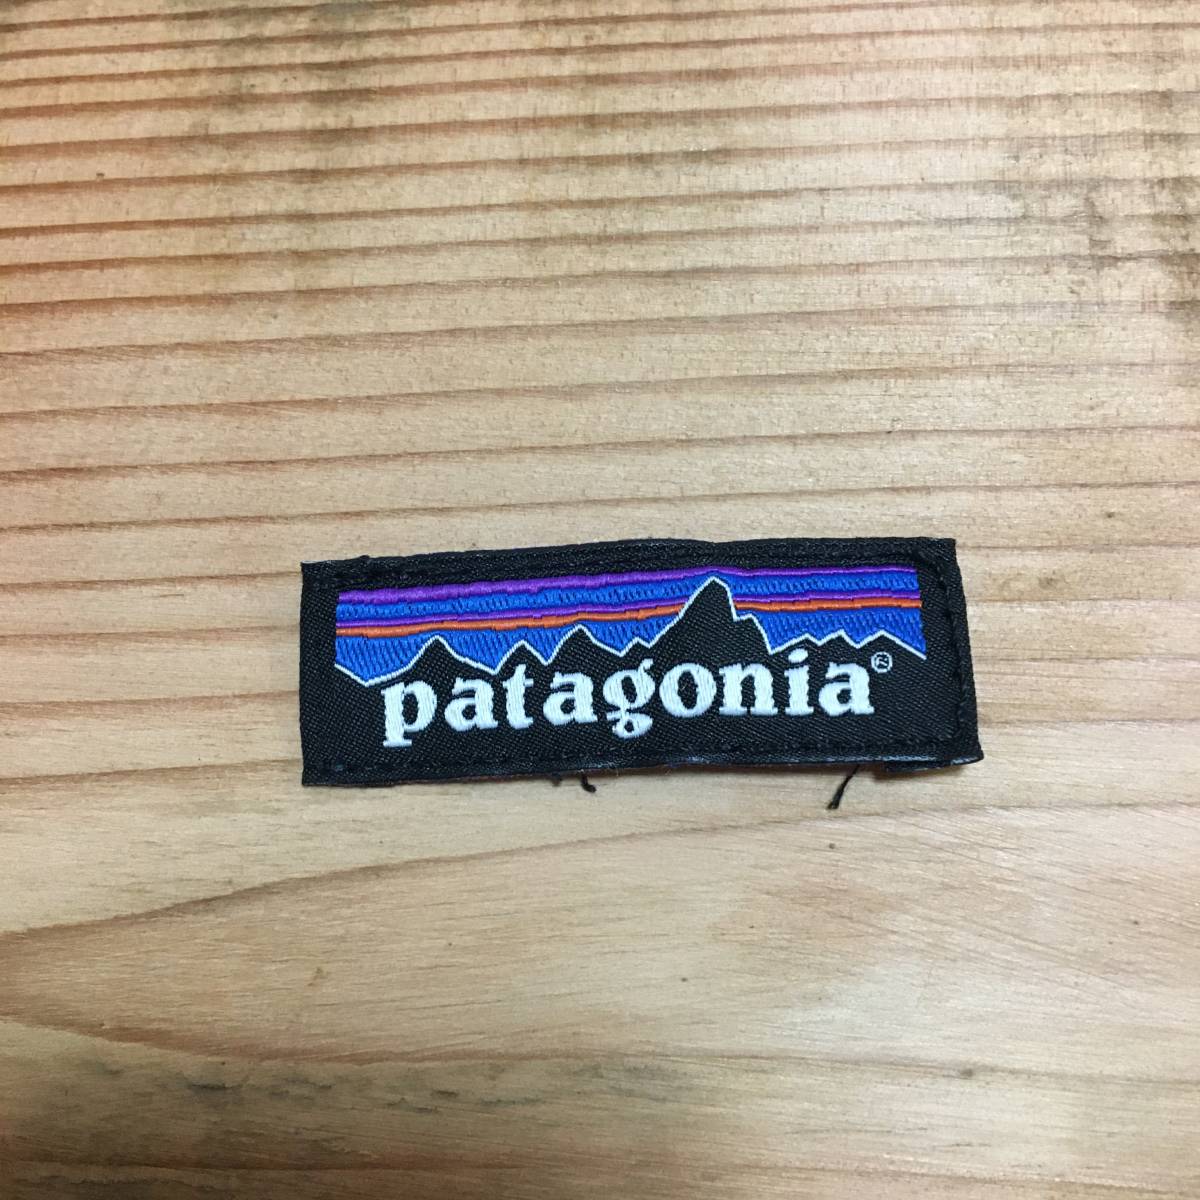 新品外し patagonia パタゴニア タグ 5 x 1.7 (cm) _画像1